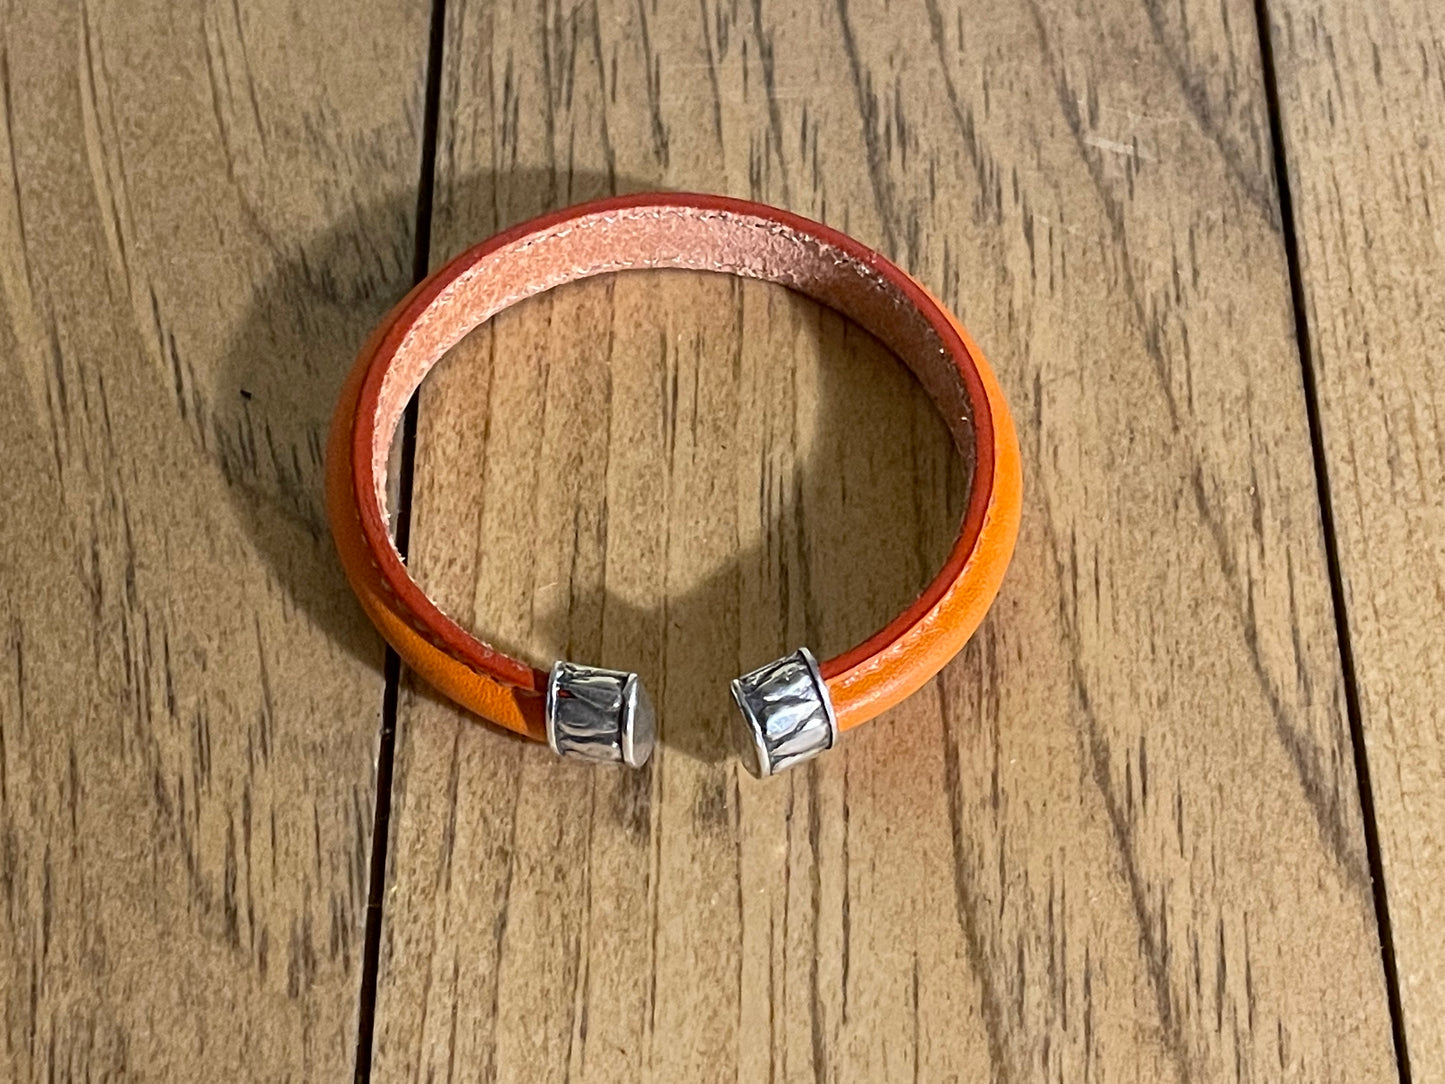 Mini Regaliz Leather Cuff Bracelets